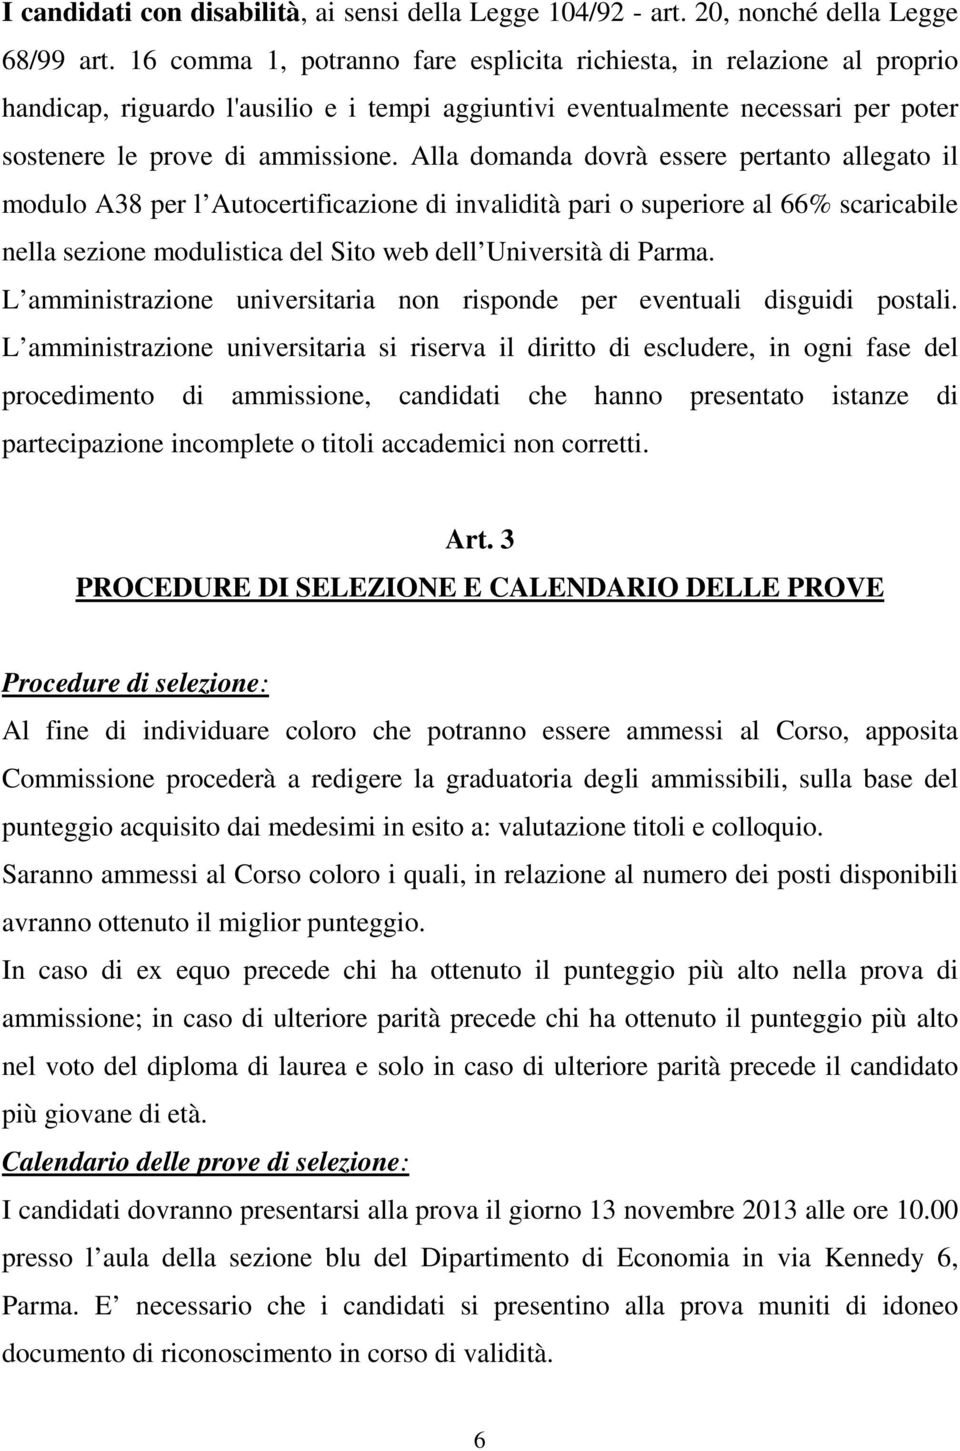 Alla domanda dovrà essere pertanto allegato il modulo A38 per l Autocertificazione di invalidità pari o superiore al 66% scaricabile nella sezione modulistica del Sito web dell Università di Parma.